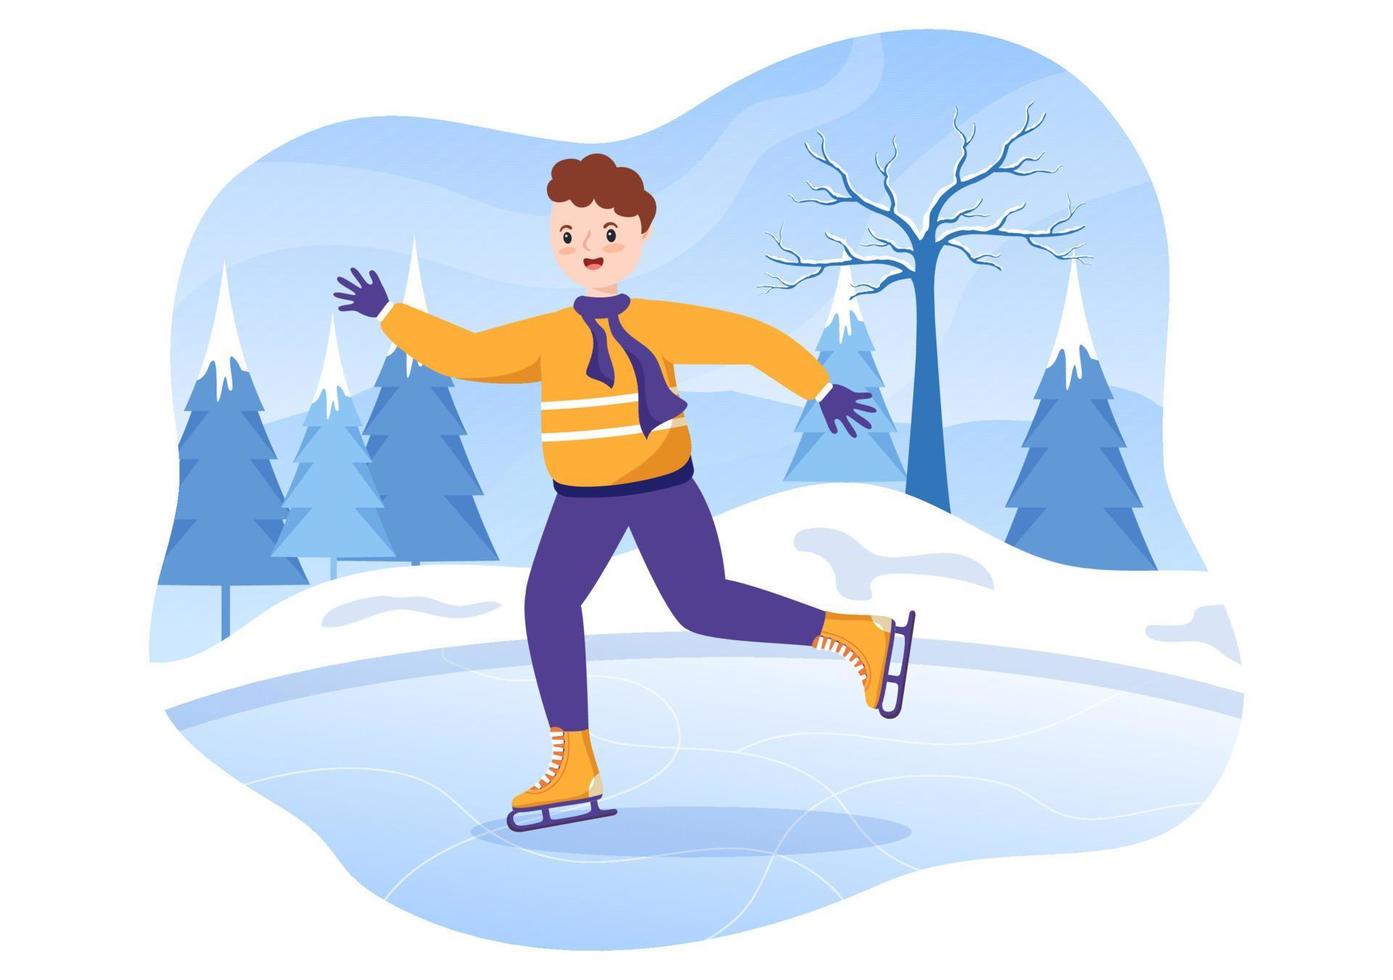 patinaje sobre hielo dibujos animados dibujados a mano ilustración plana de diversión invernal actividades deportivas al aire libre en pista de hielo con ropa de abrigo de temporada vector